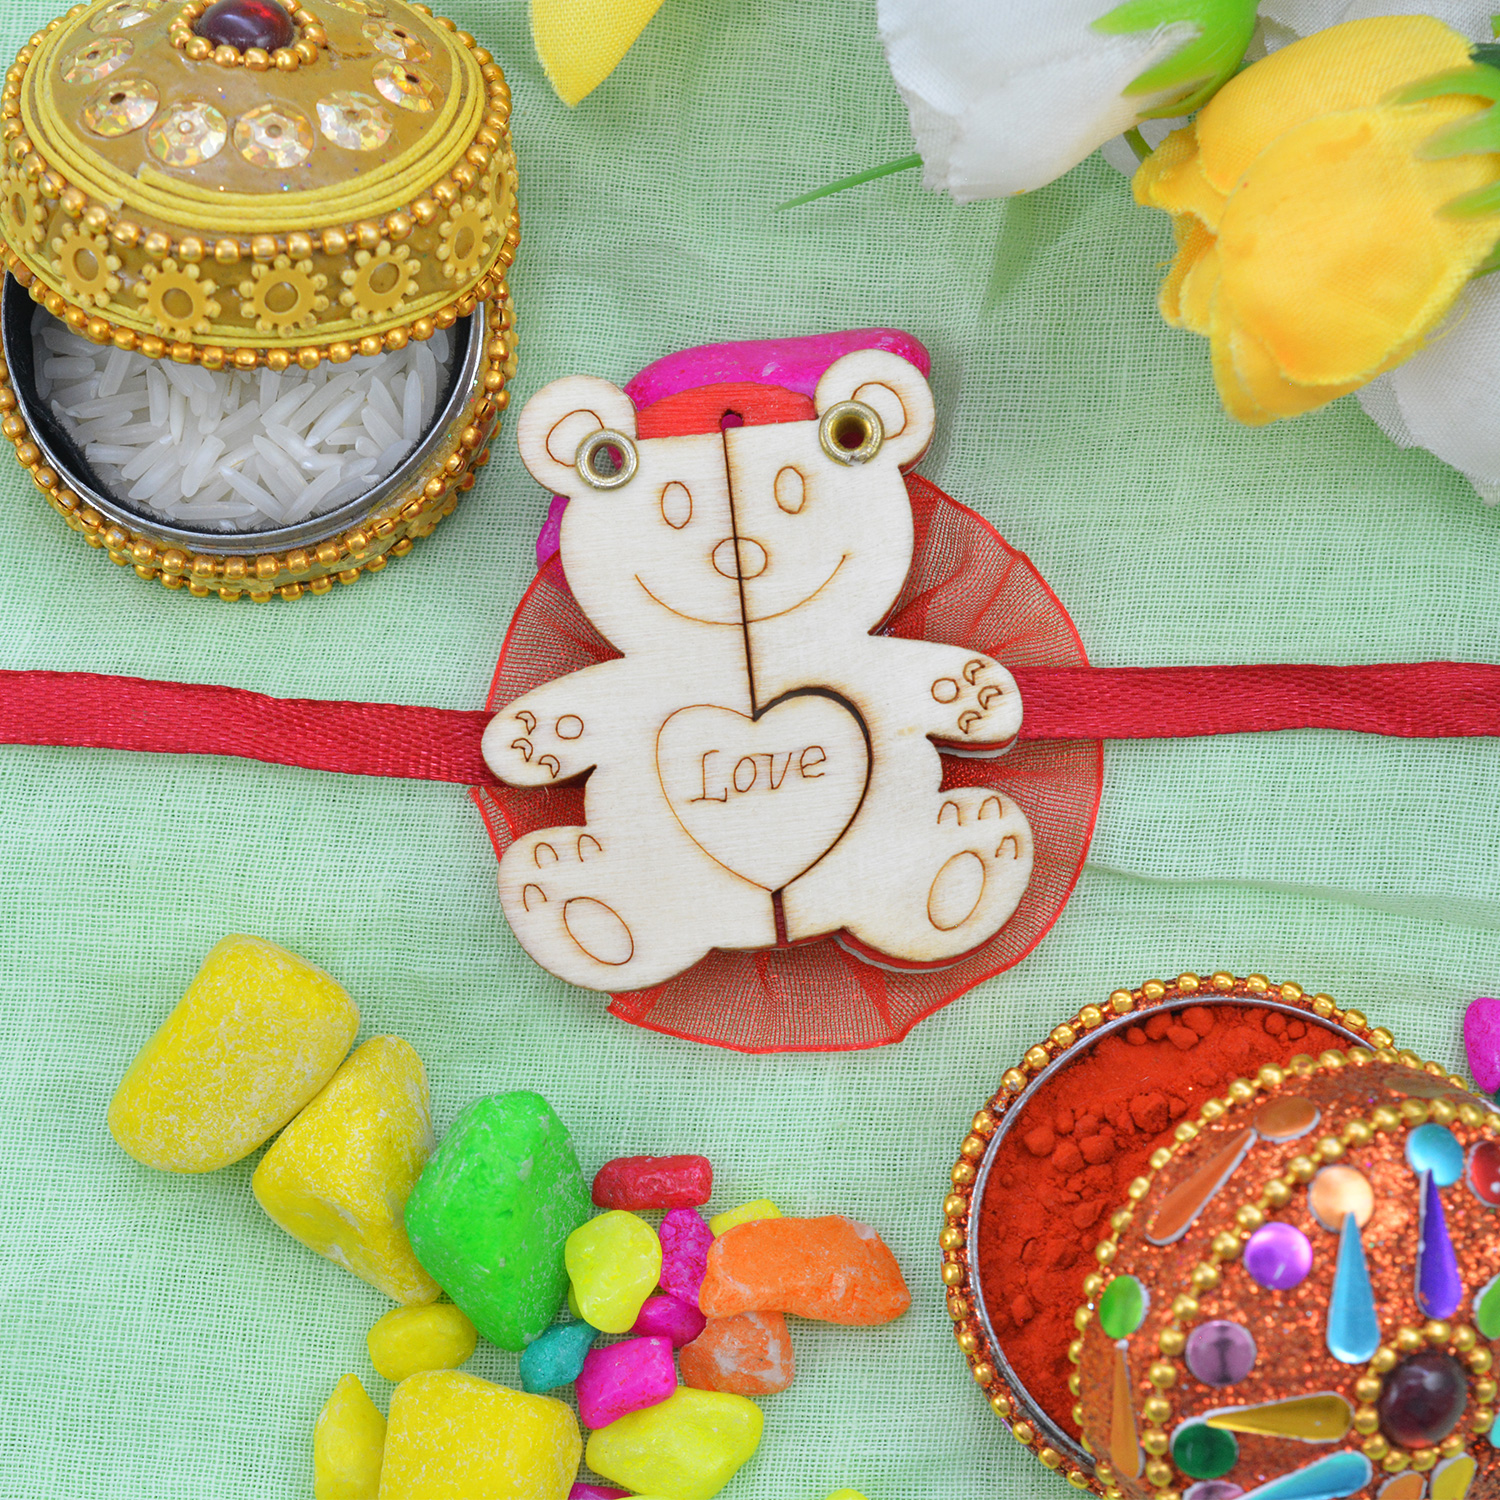 Buy or send Love Wooden Teddy Kids Cartoon Rakhi for Babies Online